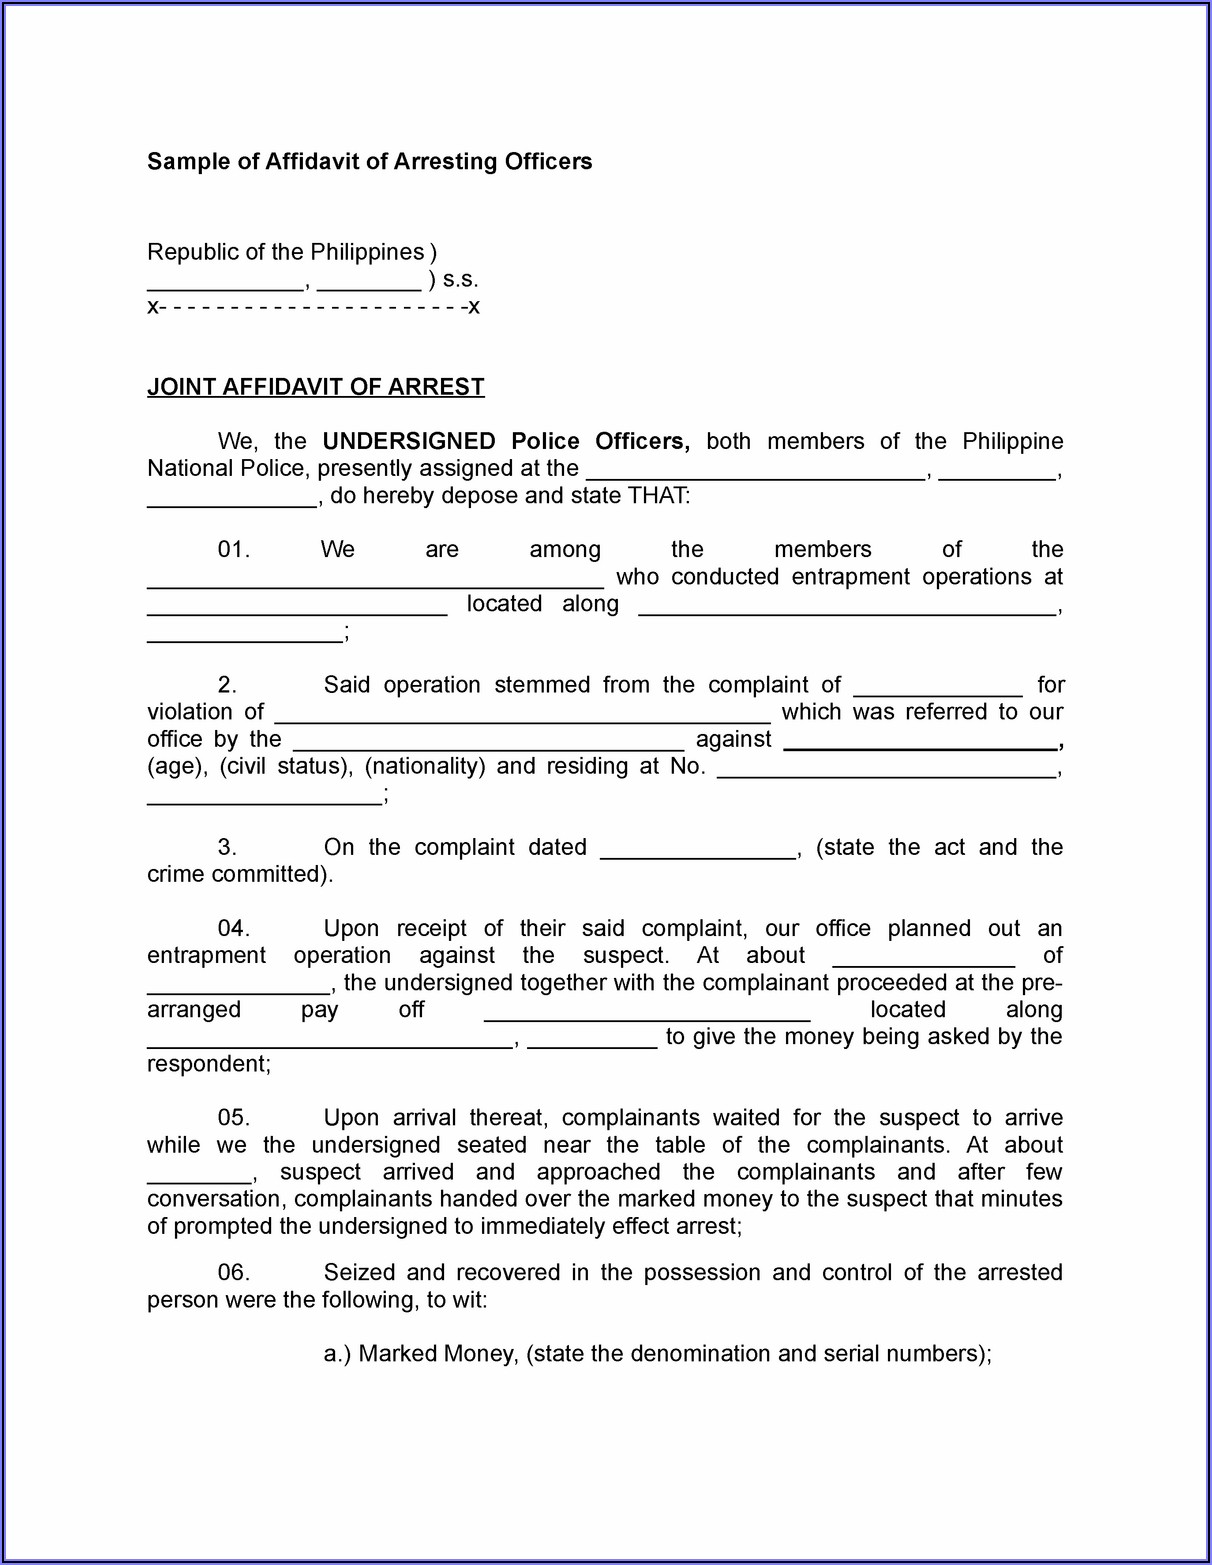 Sample Legal Affidavit Forms